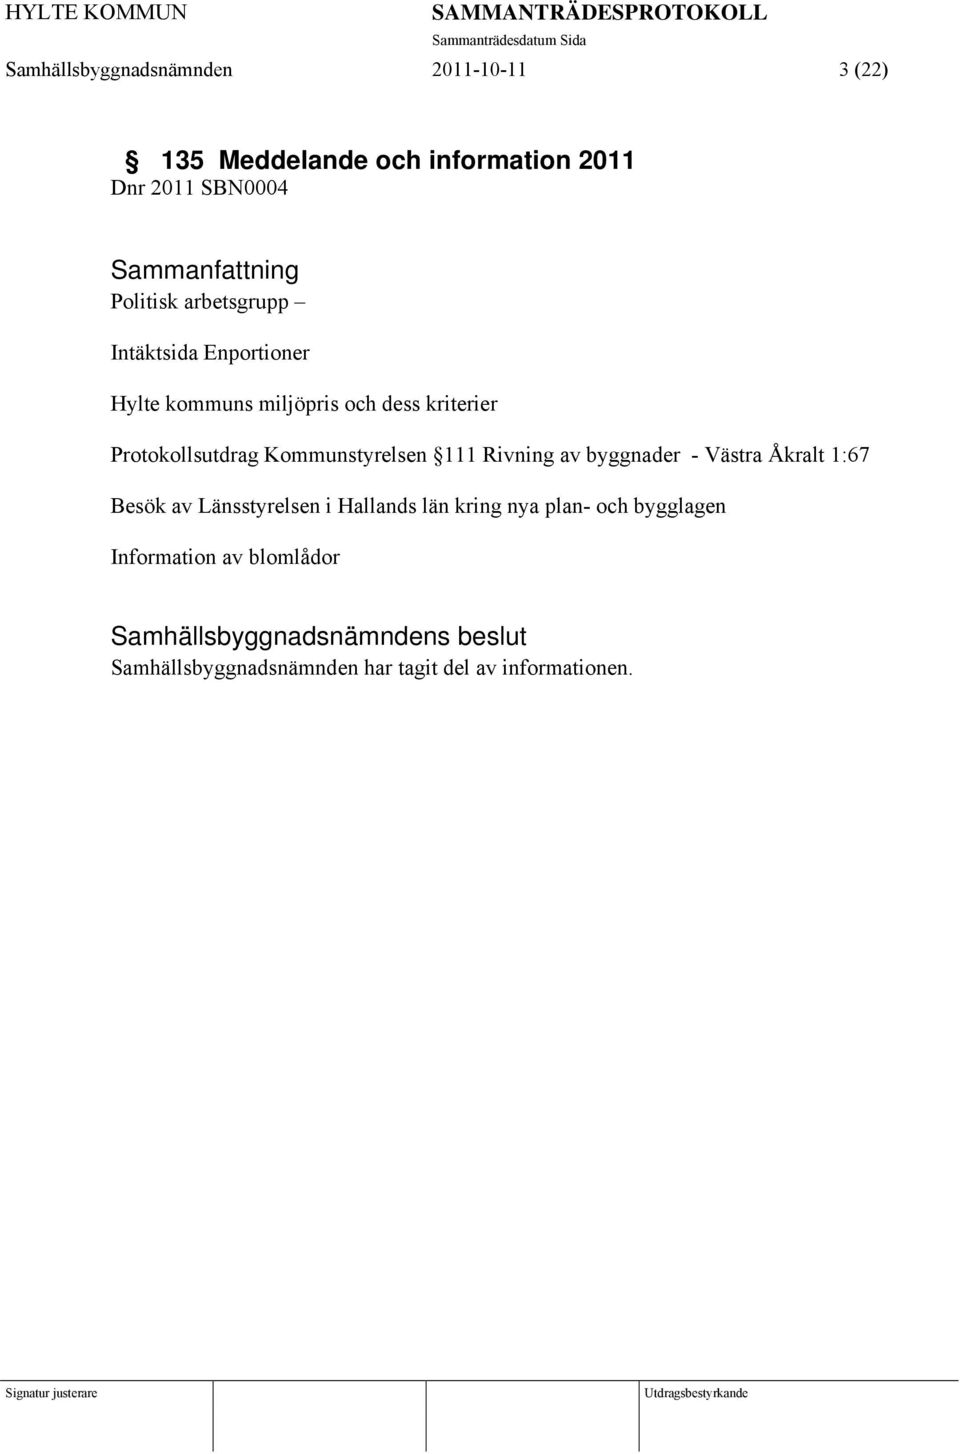 Protokollsutdrag Kommunstyrelsen 111 Rivning av byggnader - Västra Åkralt 1:67 Besök av Länsstyrelsen